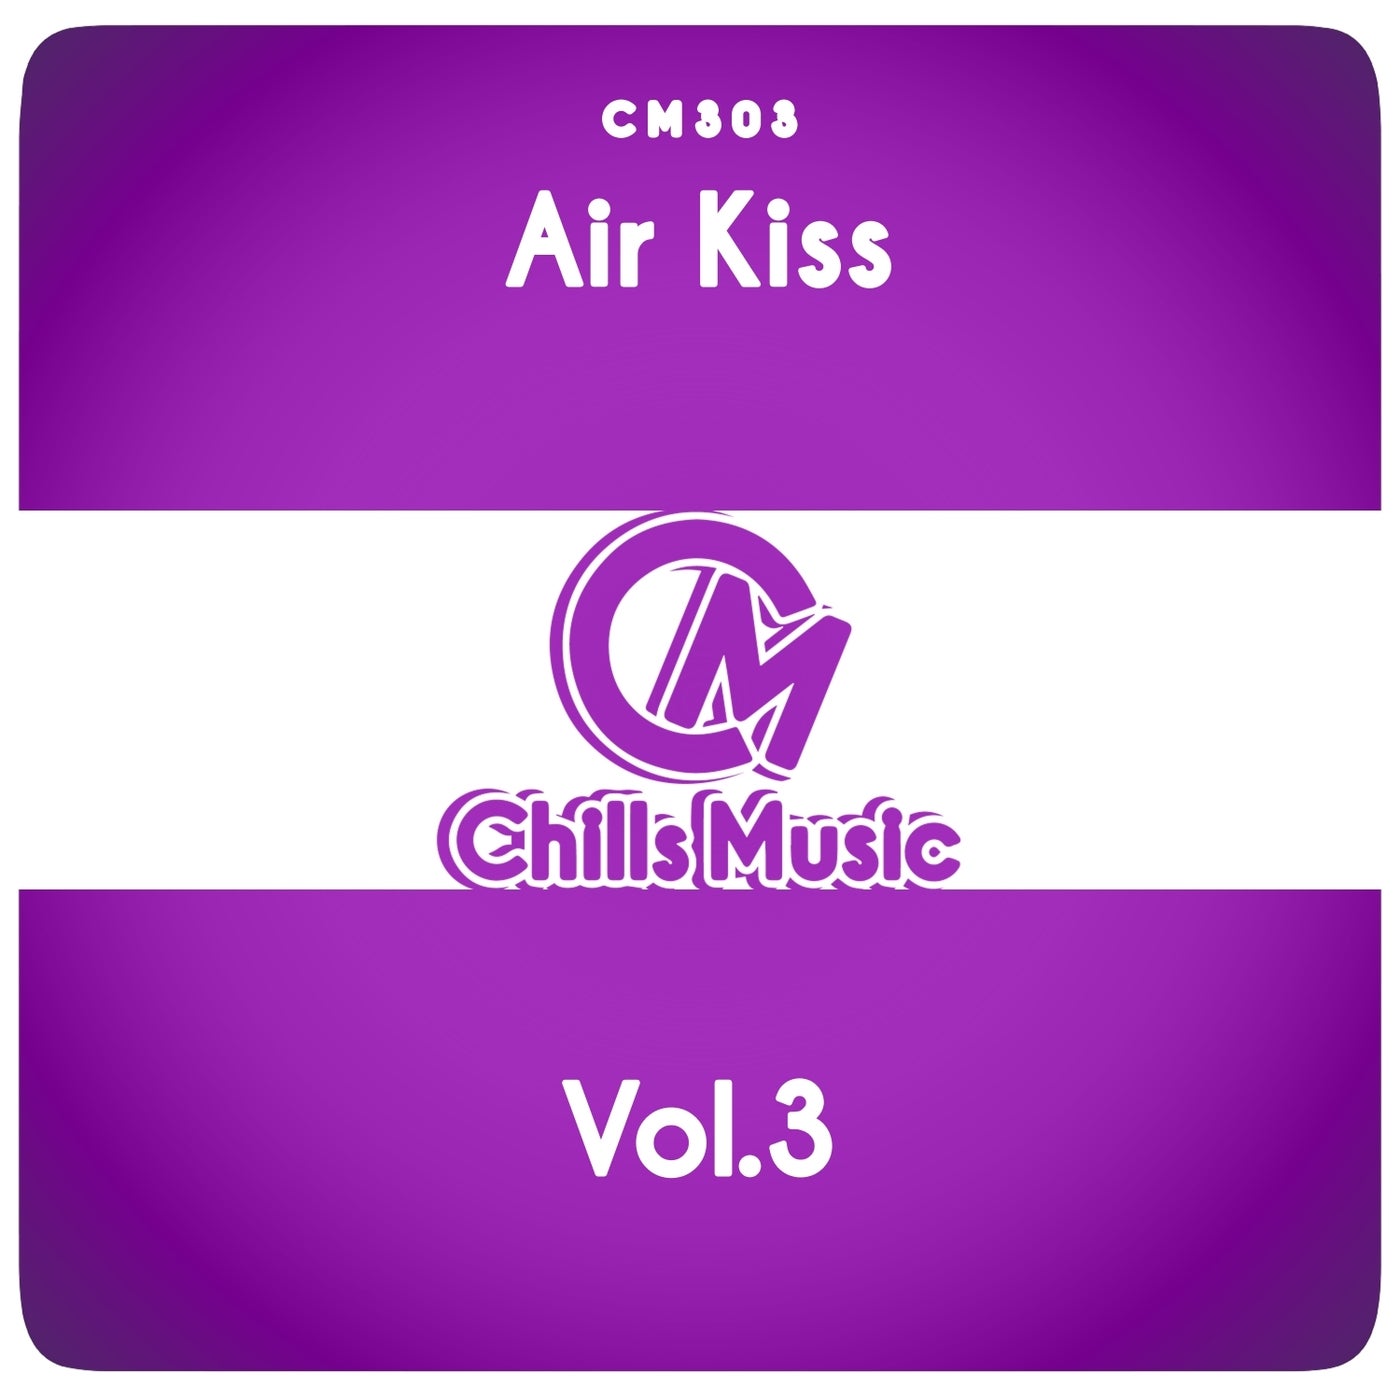 Air Kiss, Vol.3